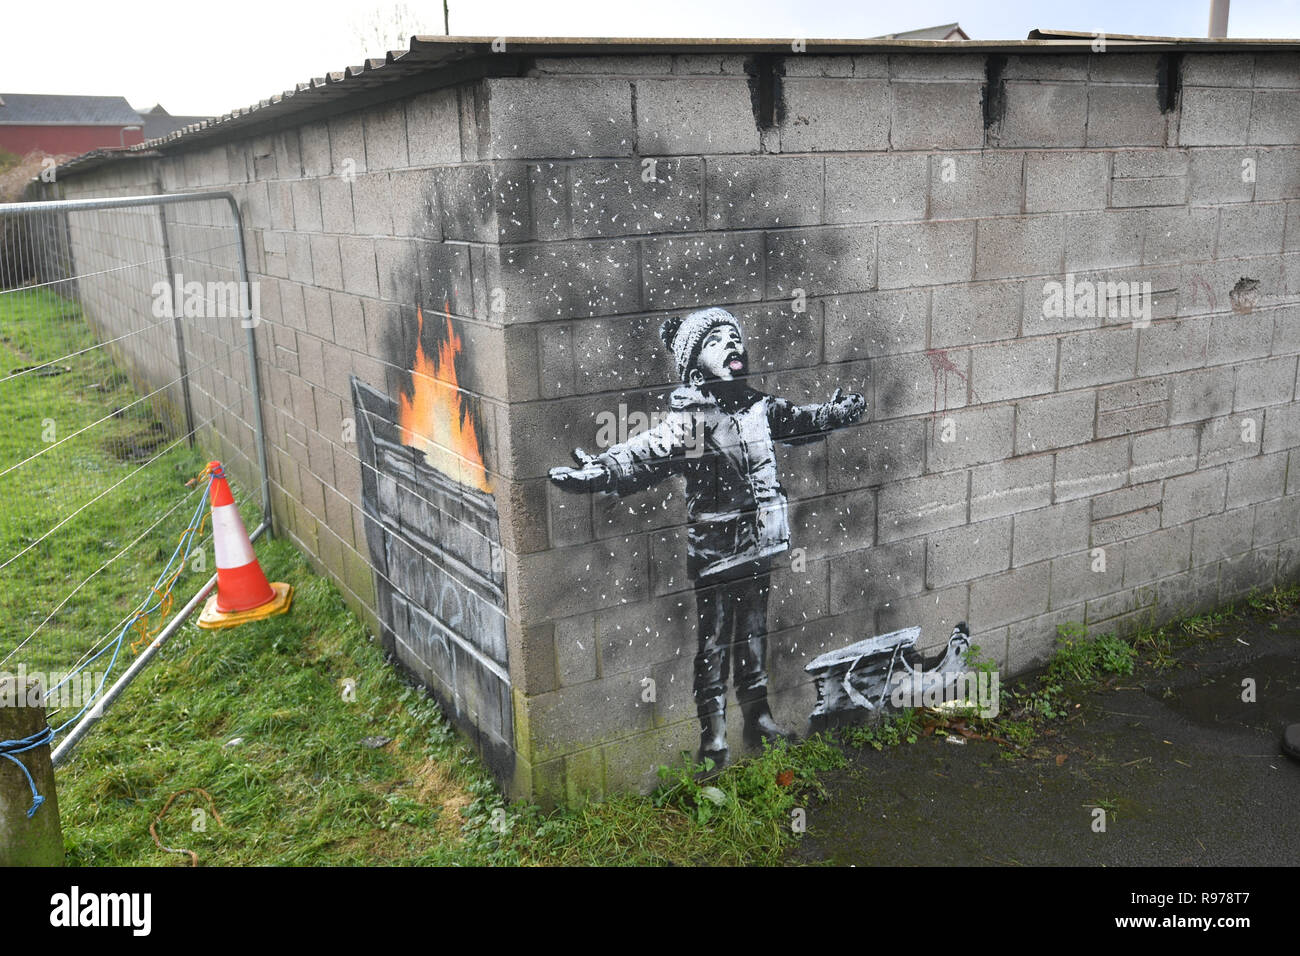 Kunstwerke von Street Artist Banksy, die auf eine Garage Wand in Taibach, Port Talbot, South Wales erschienen ist. Das Bild erschien über Nacht und zeigt ein Kind, das in den fallenden Asche und Rauch von einem Feuer in einem fort. Stockfoto